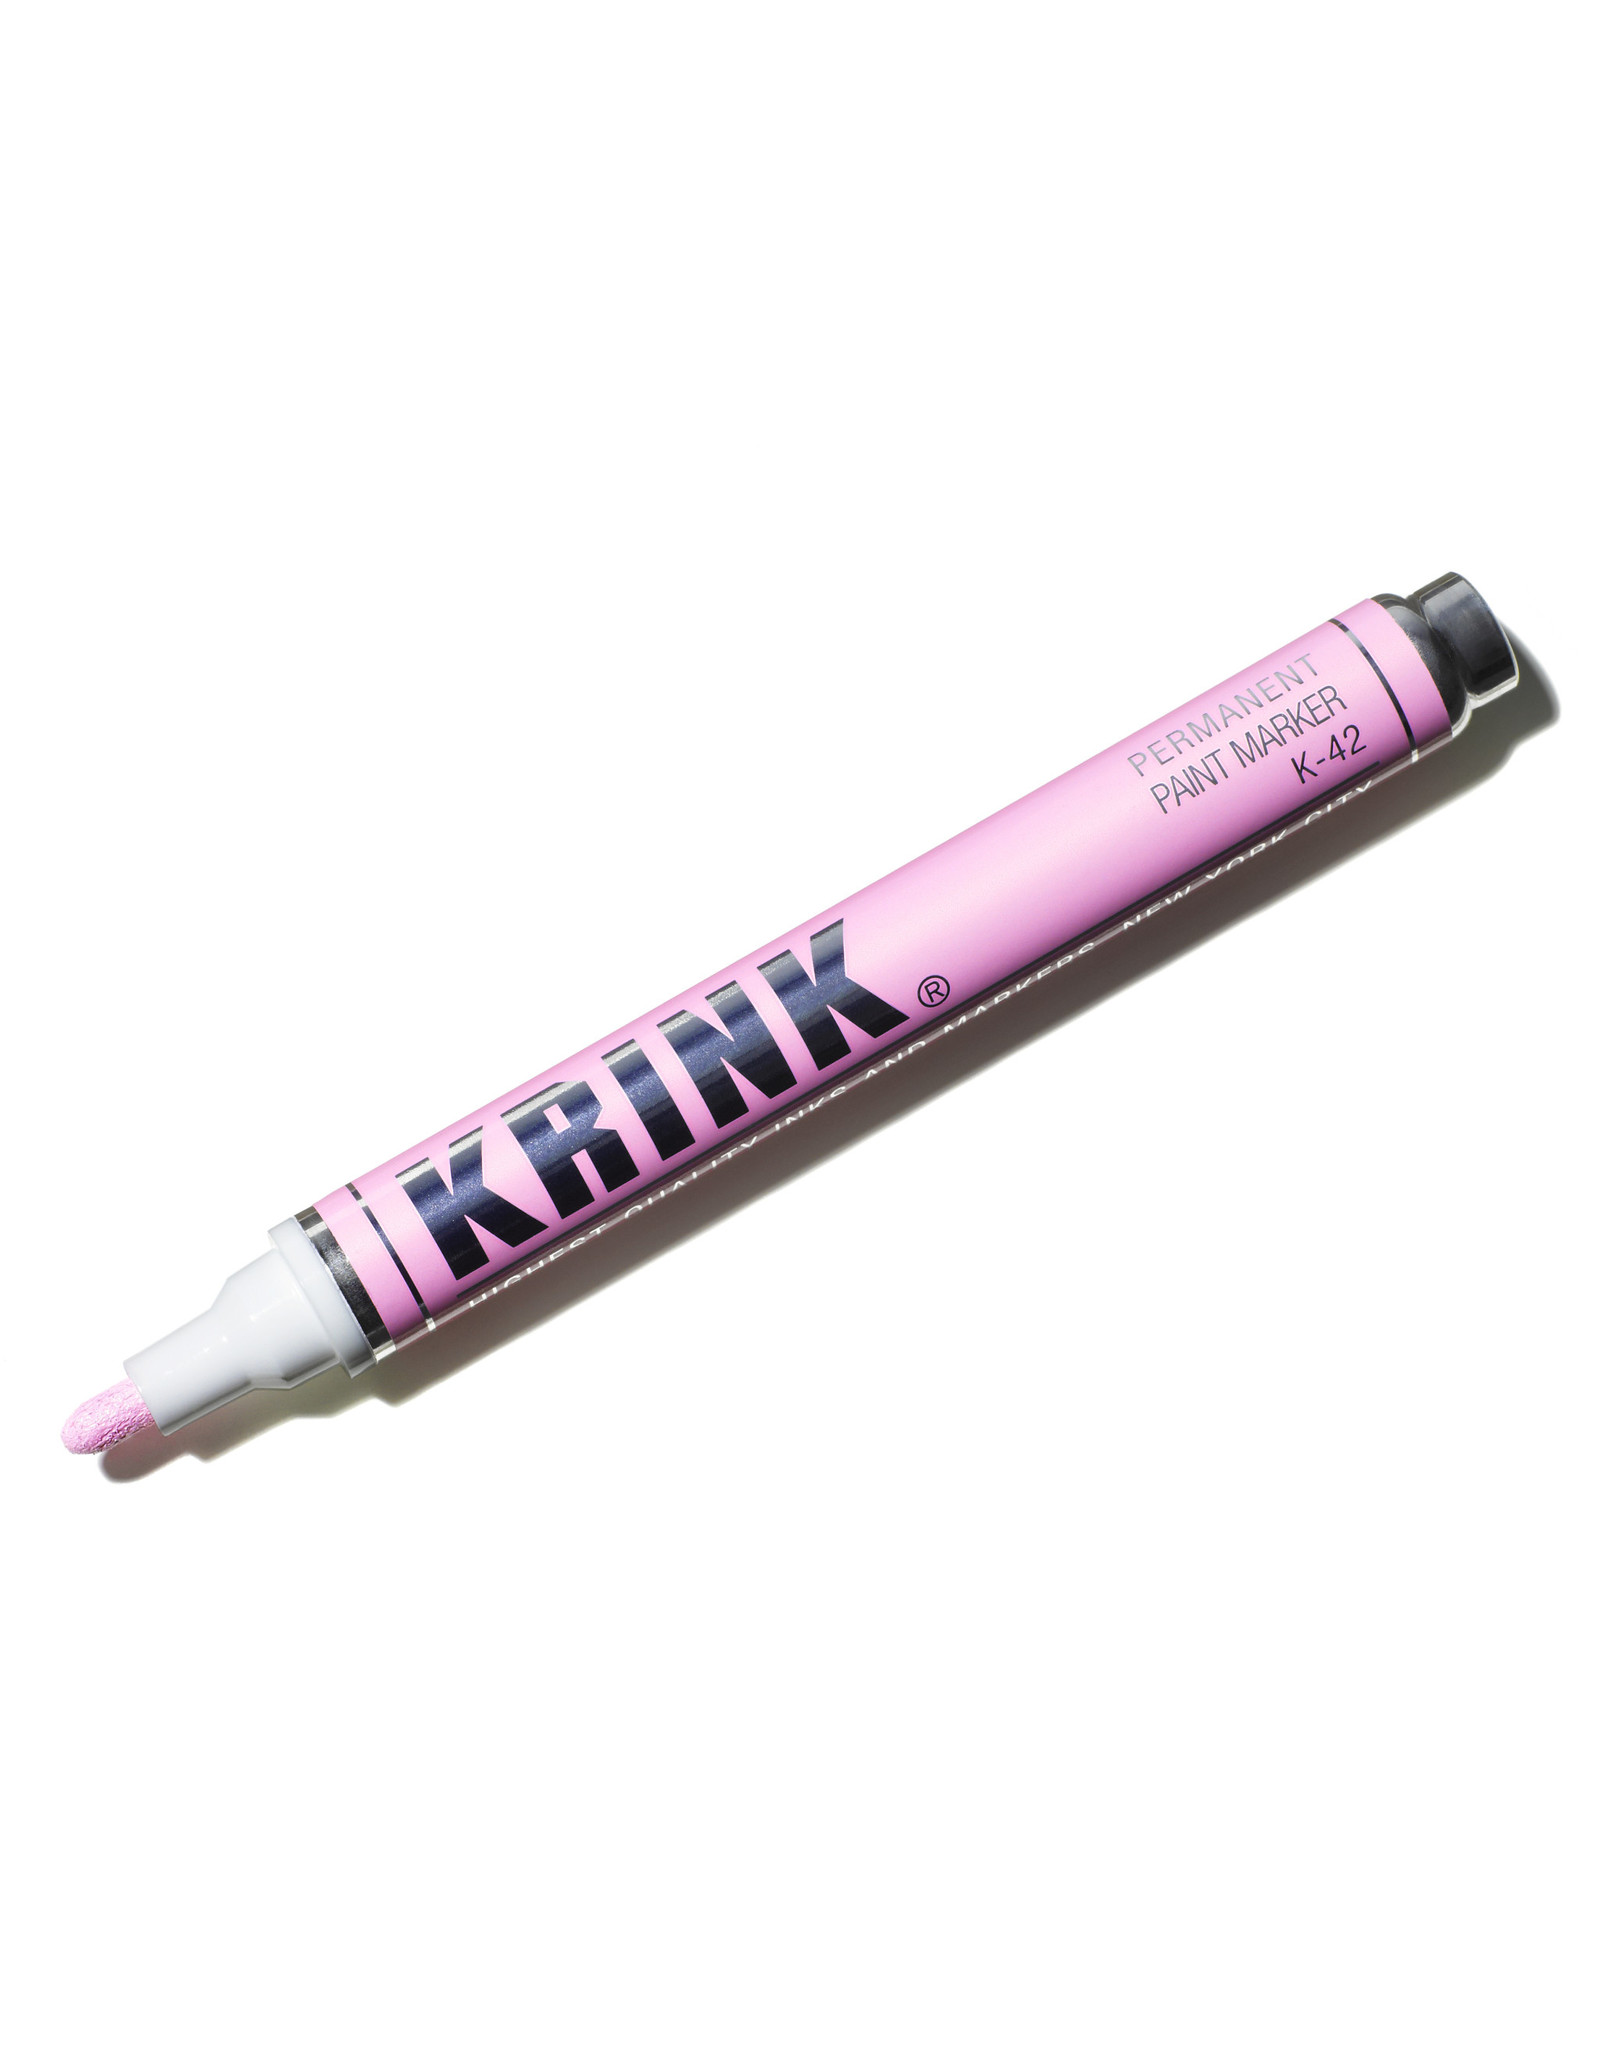 Krink Krink K-42 Alcohol Paint Marker, Light Pink